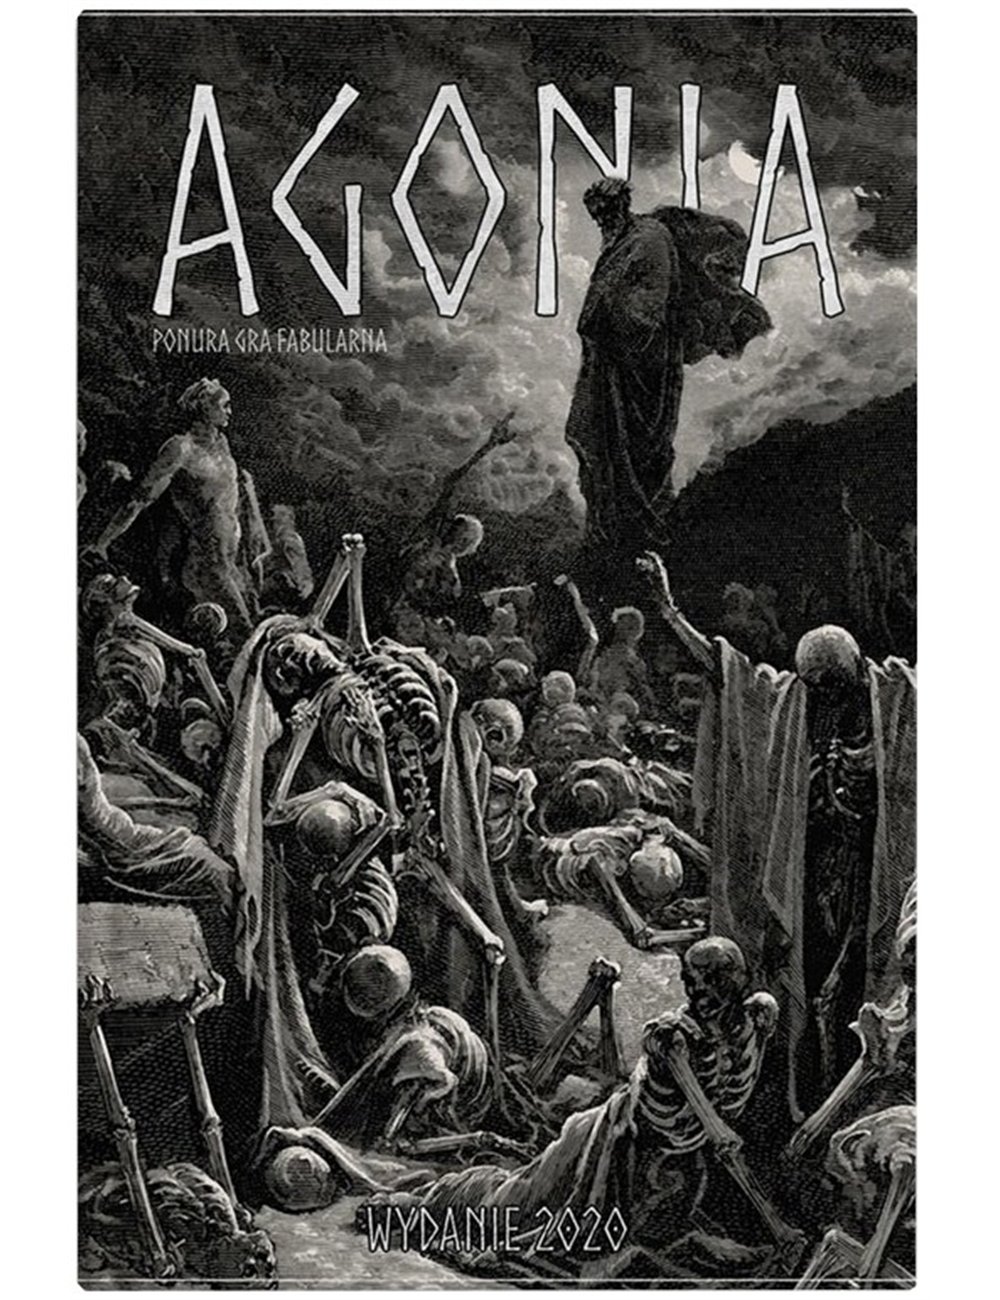 Agonia: Ponura gra fabularna (wydanie 2020)